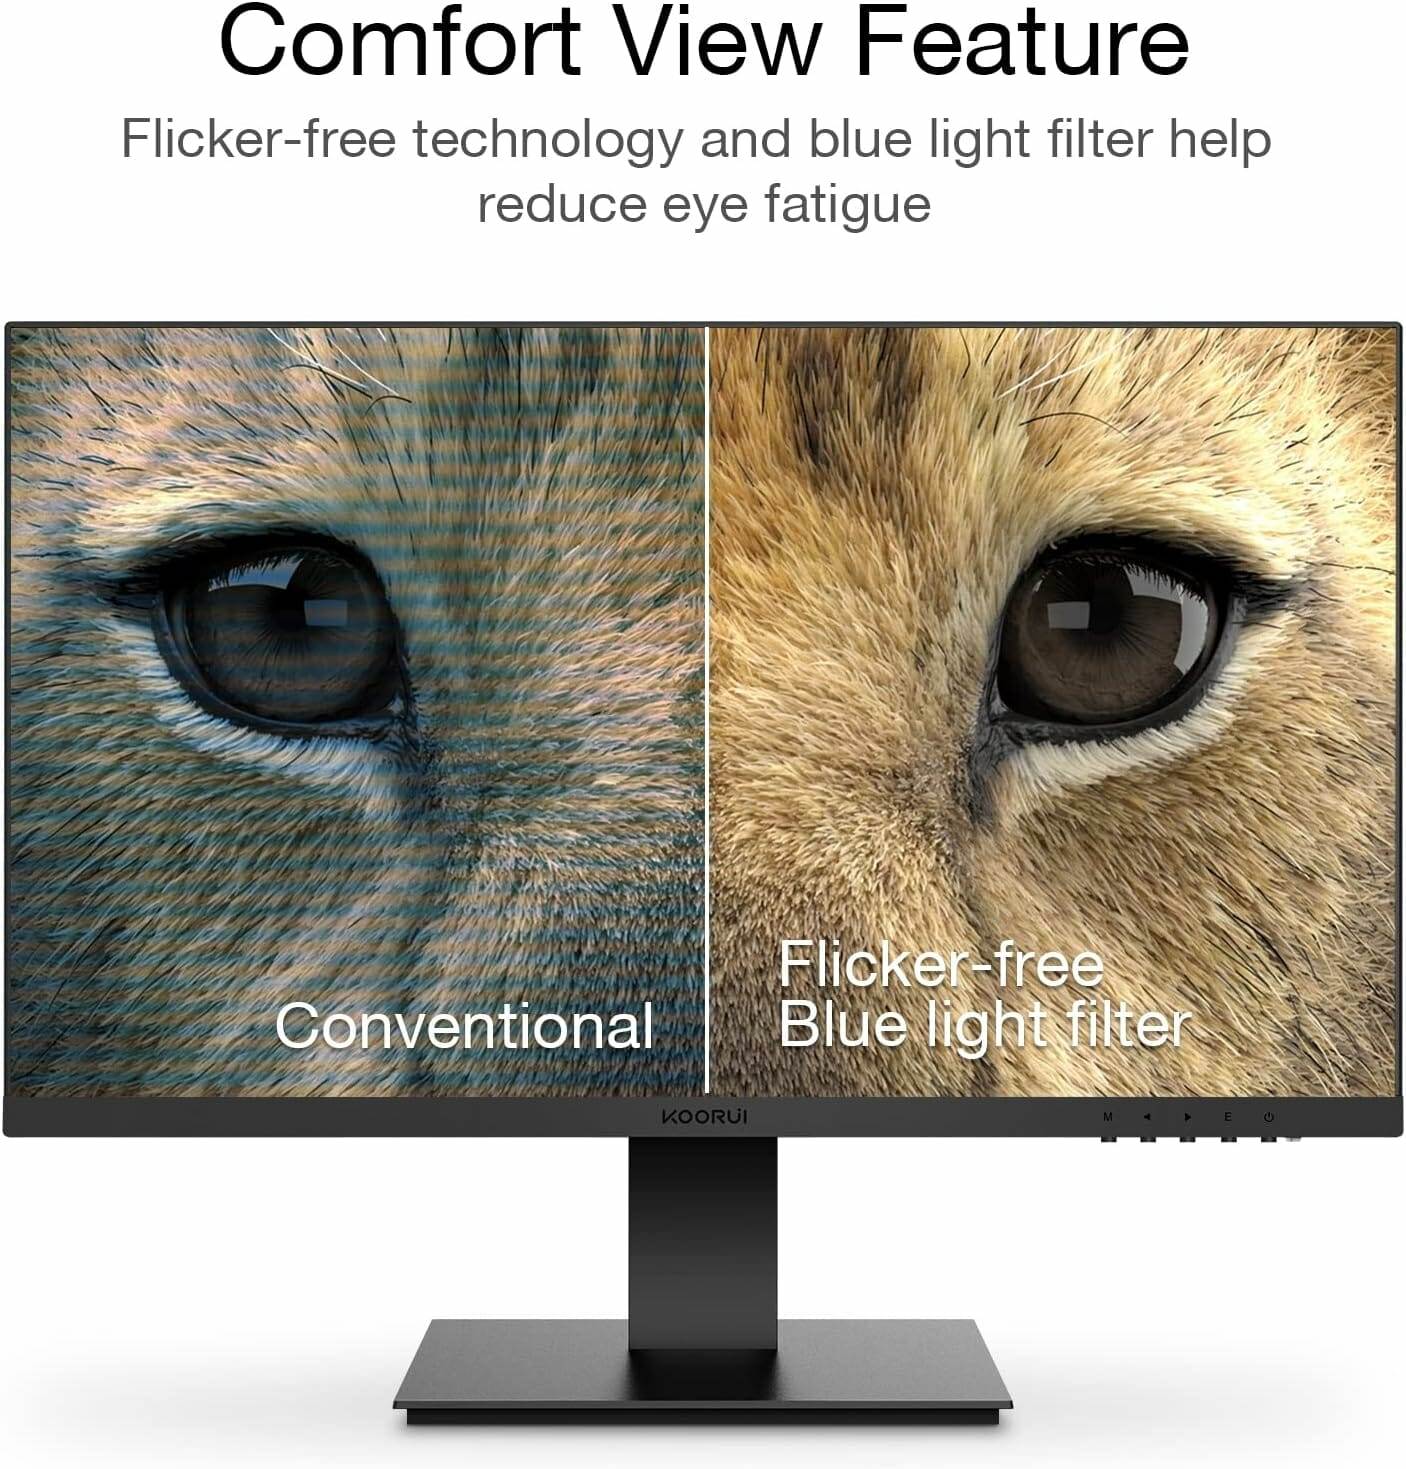 Ein Bild eines Löwen und einer Giraffe mit der Aufschrift „Comfort View Feature“.